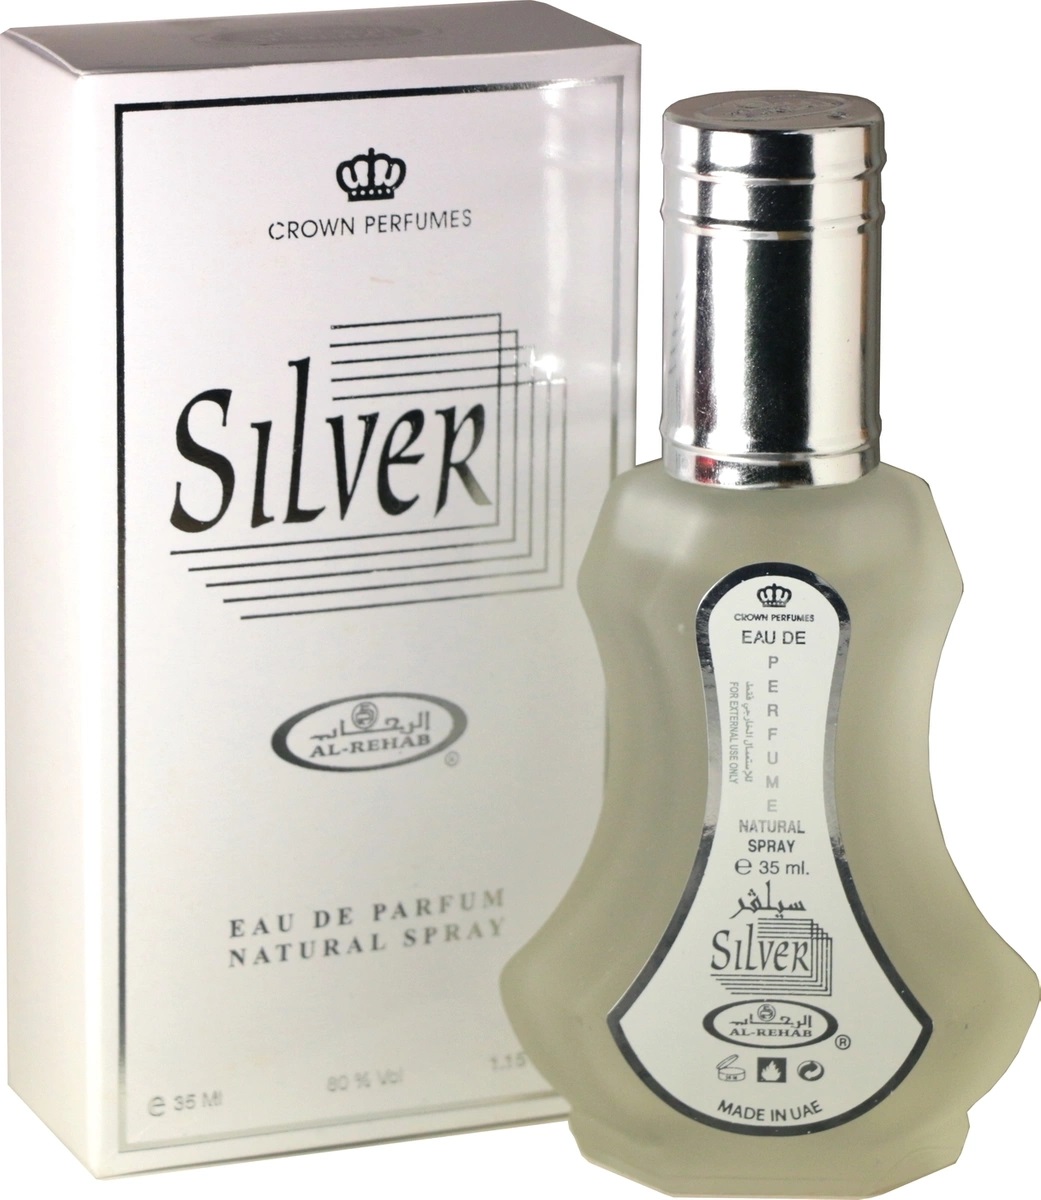 Al-Rehab Eau De Perfume SILVER (Арабская парфюмерная вода СИЛЬВЕР (унисекс), Аль-Рехаб), СПРЕЙ, 35 мл.